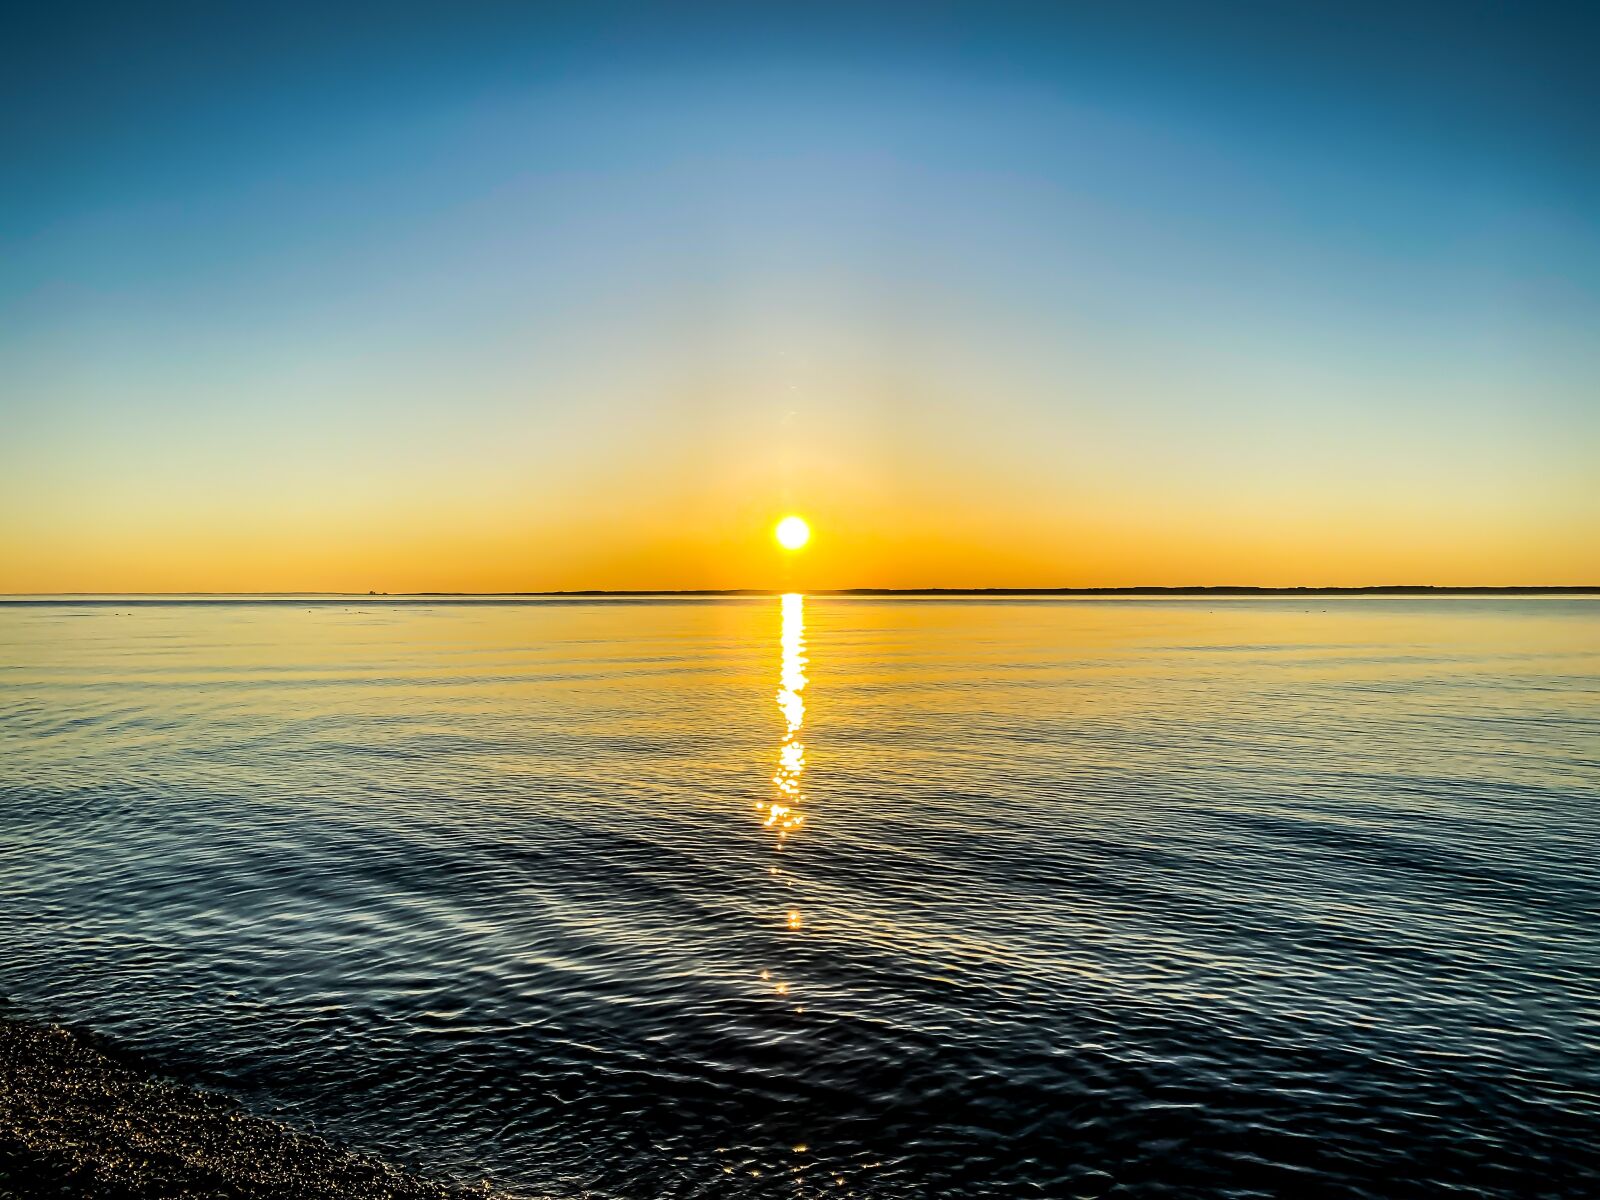 Apple iPhone 11 Pro sample photo. Sunrise, lake, nature photography